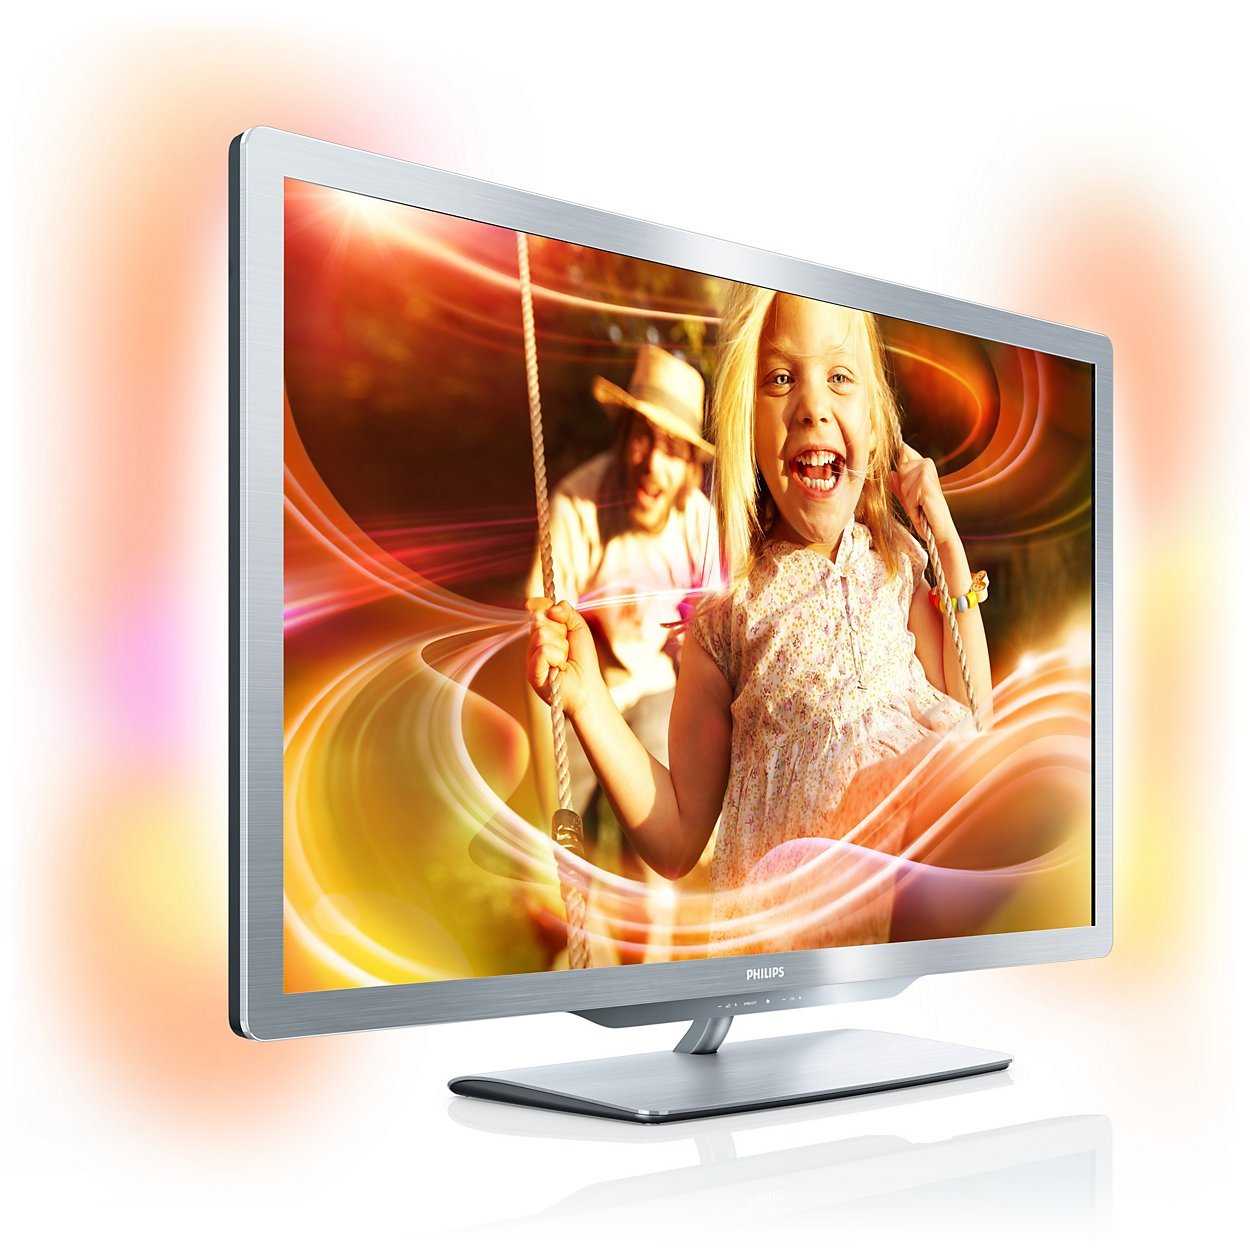 Philips 42pfl3207h - купить , скидки, цена, отзывы, обзор, характеристики - телевизоры